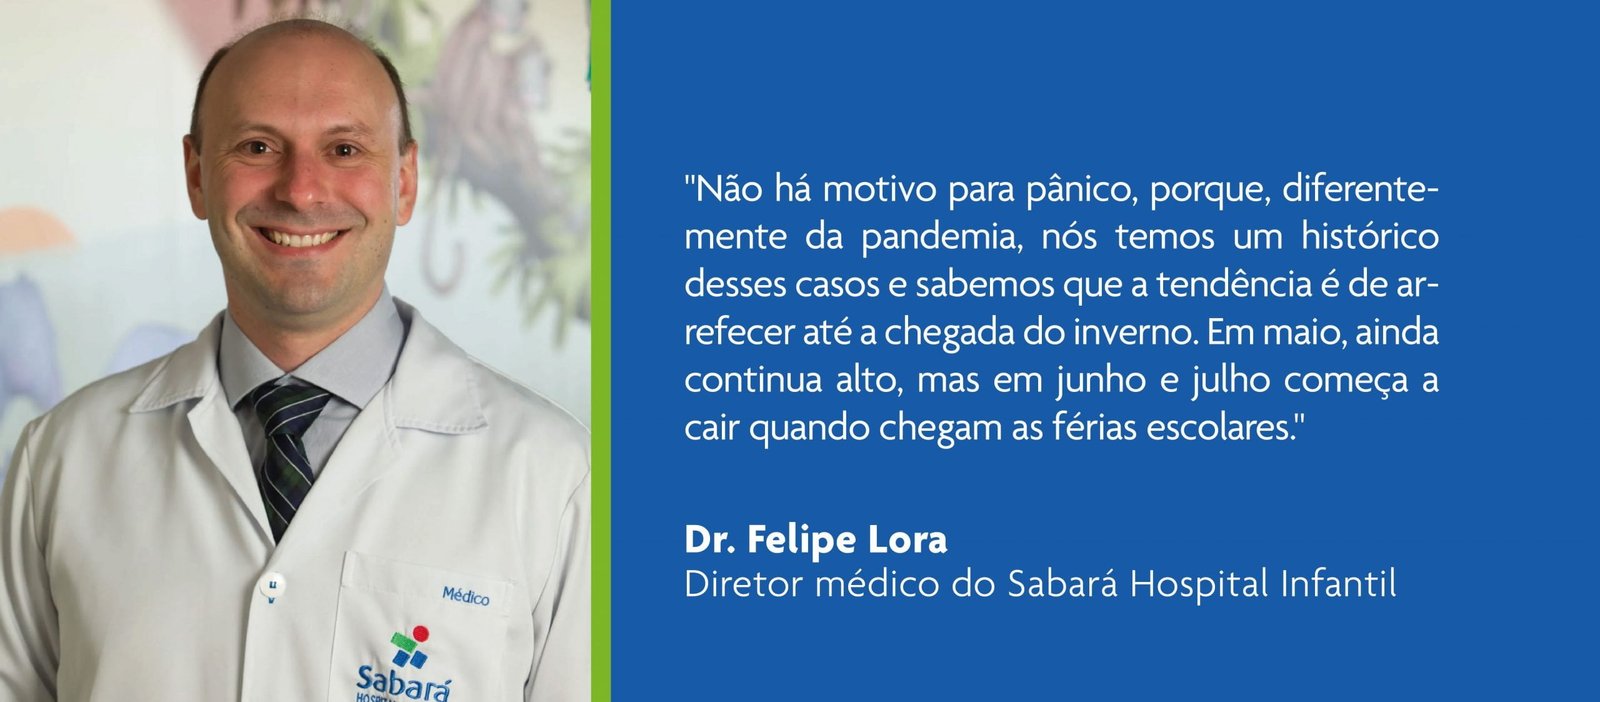 Dr Felipe Lora Diretor Médico Do Sabará Hospital Infantil Participa De Matéria Do Jornal Folha 7927